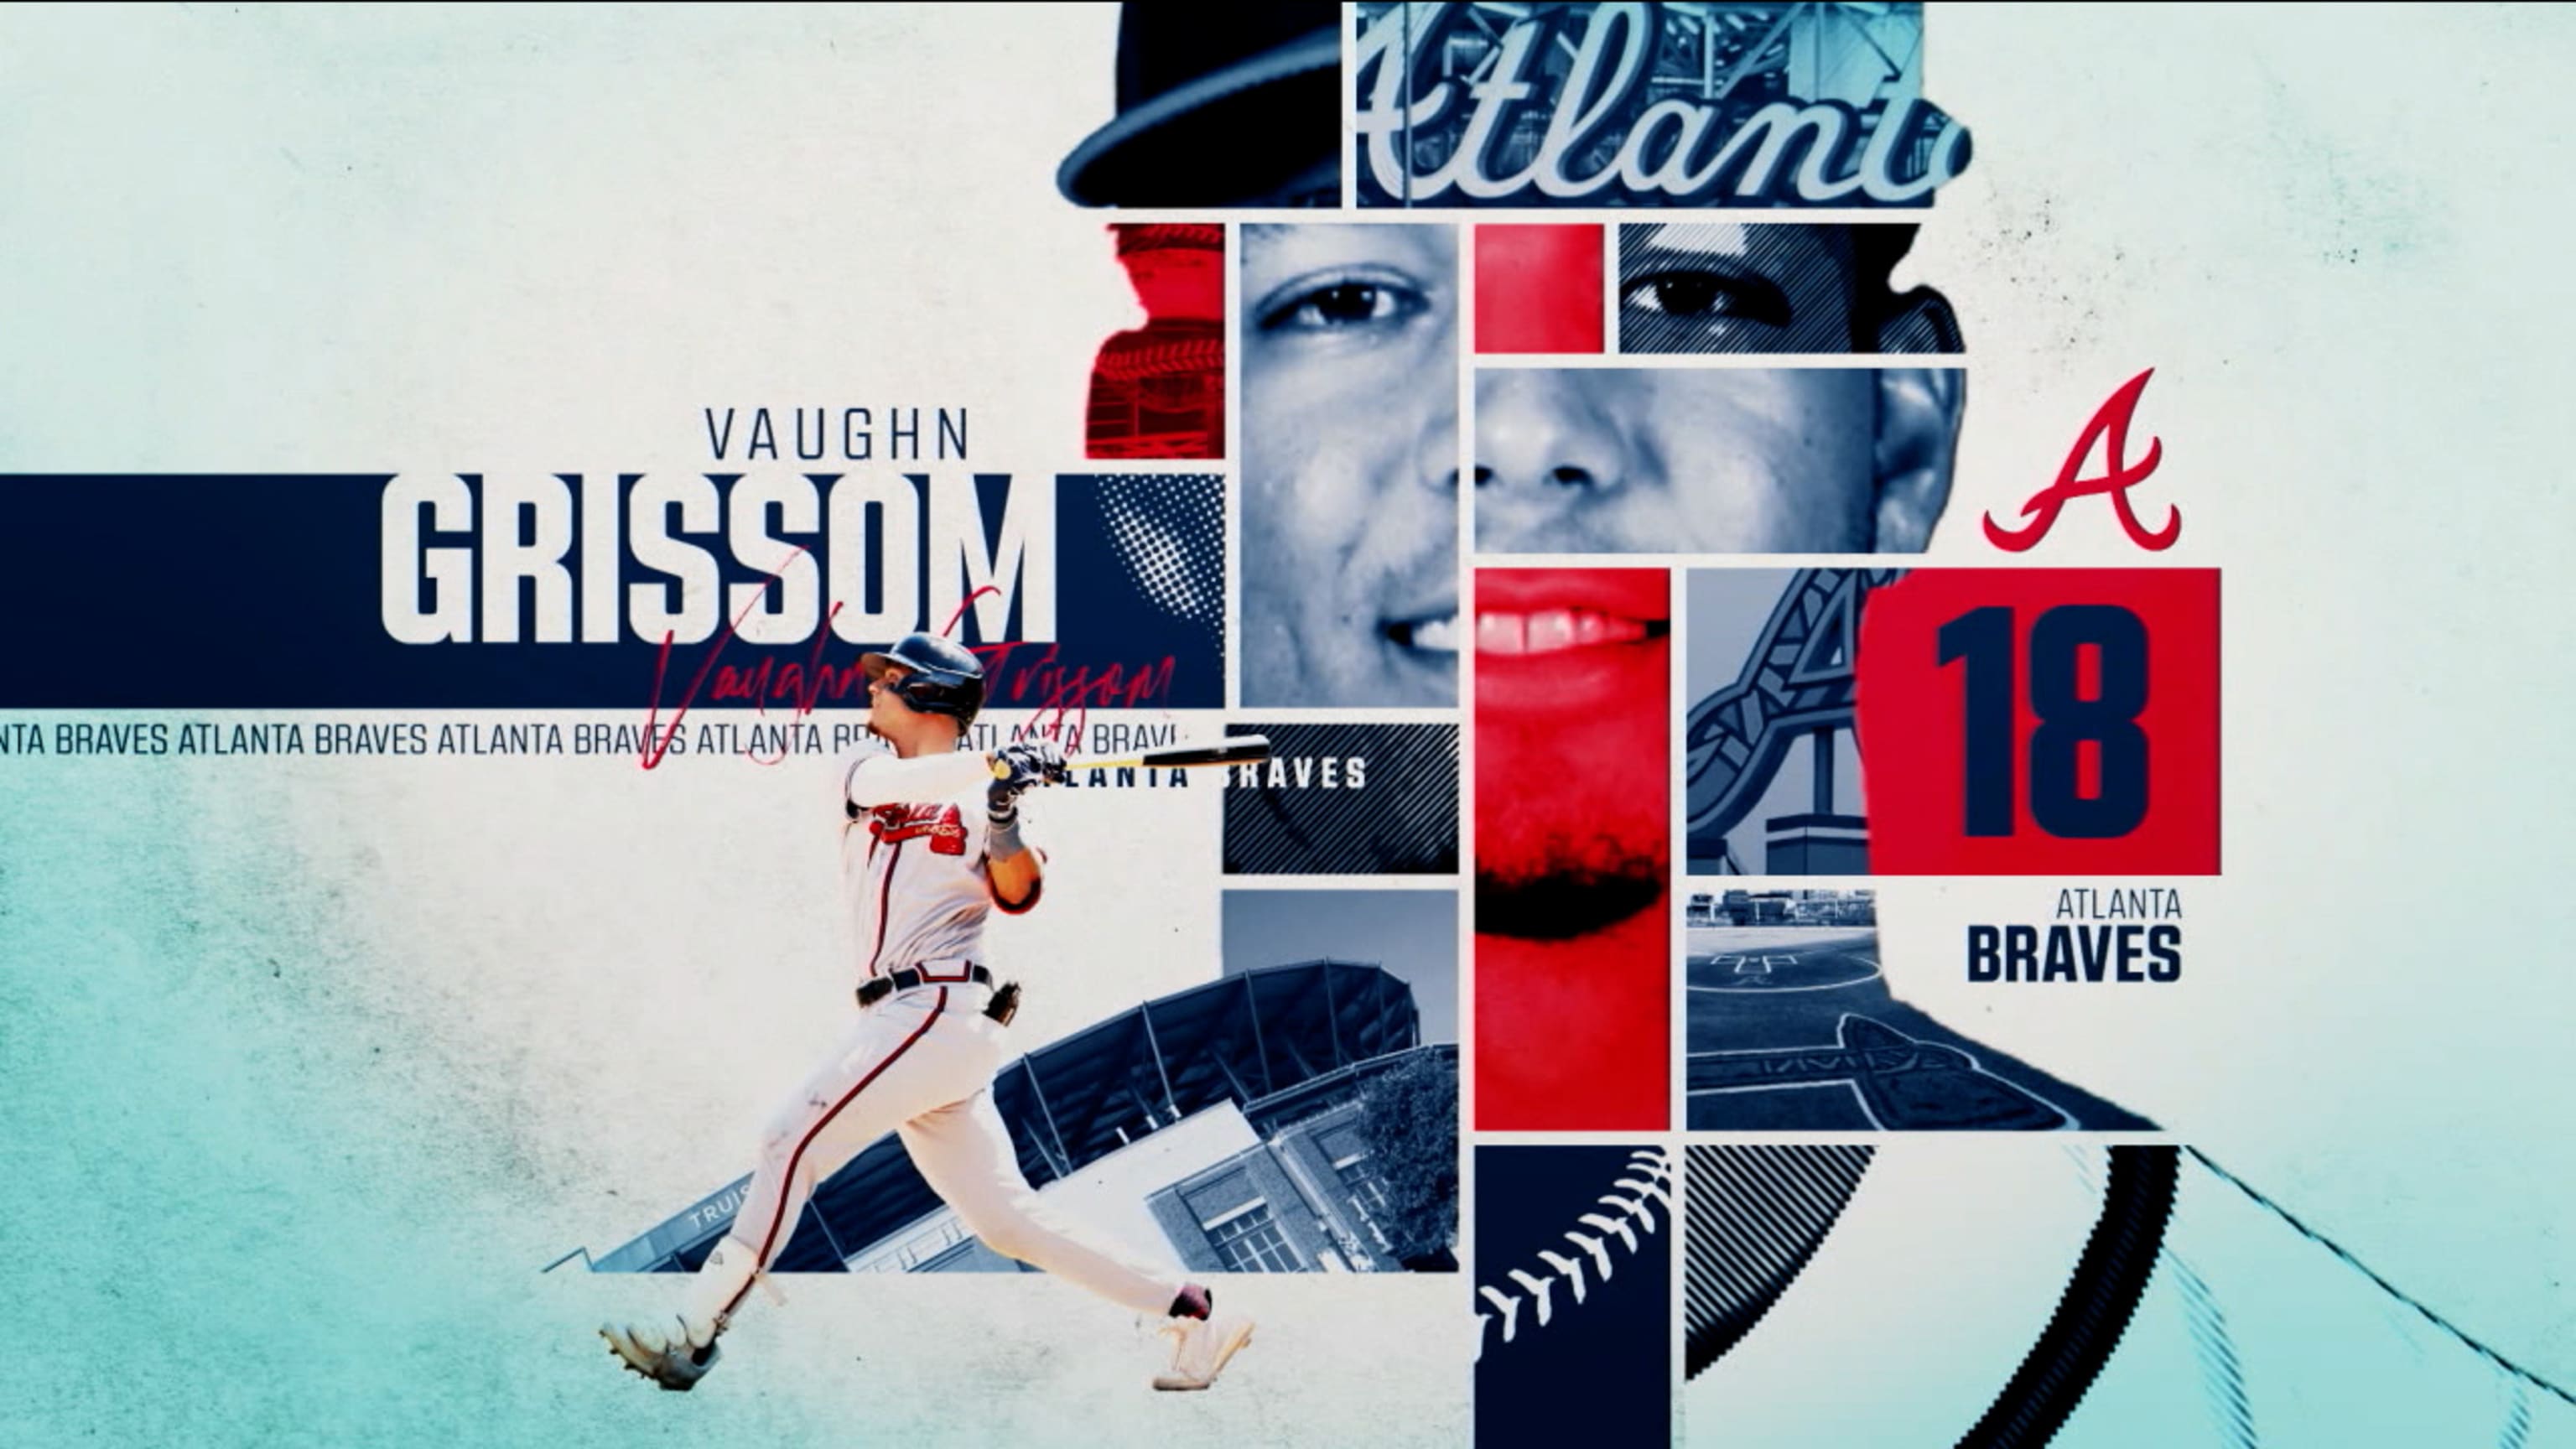 Vaughn Grissom establishes himself as favorite for Braves' shortstop role